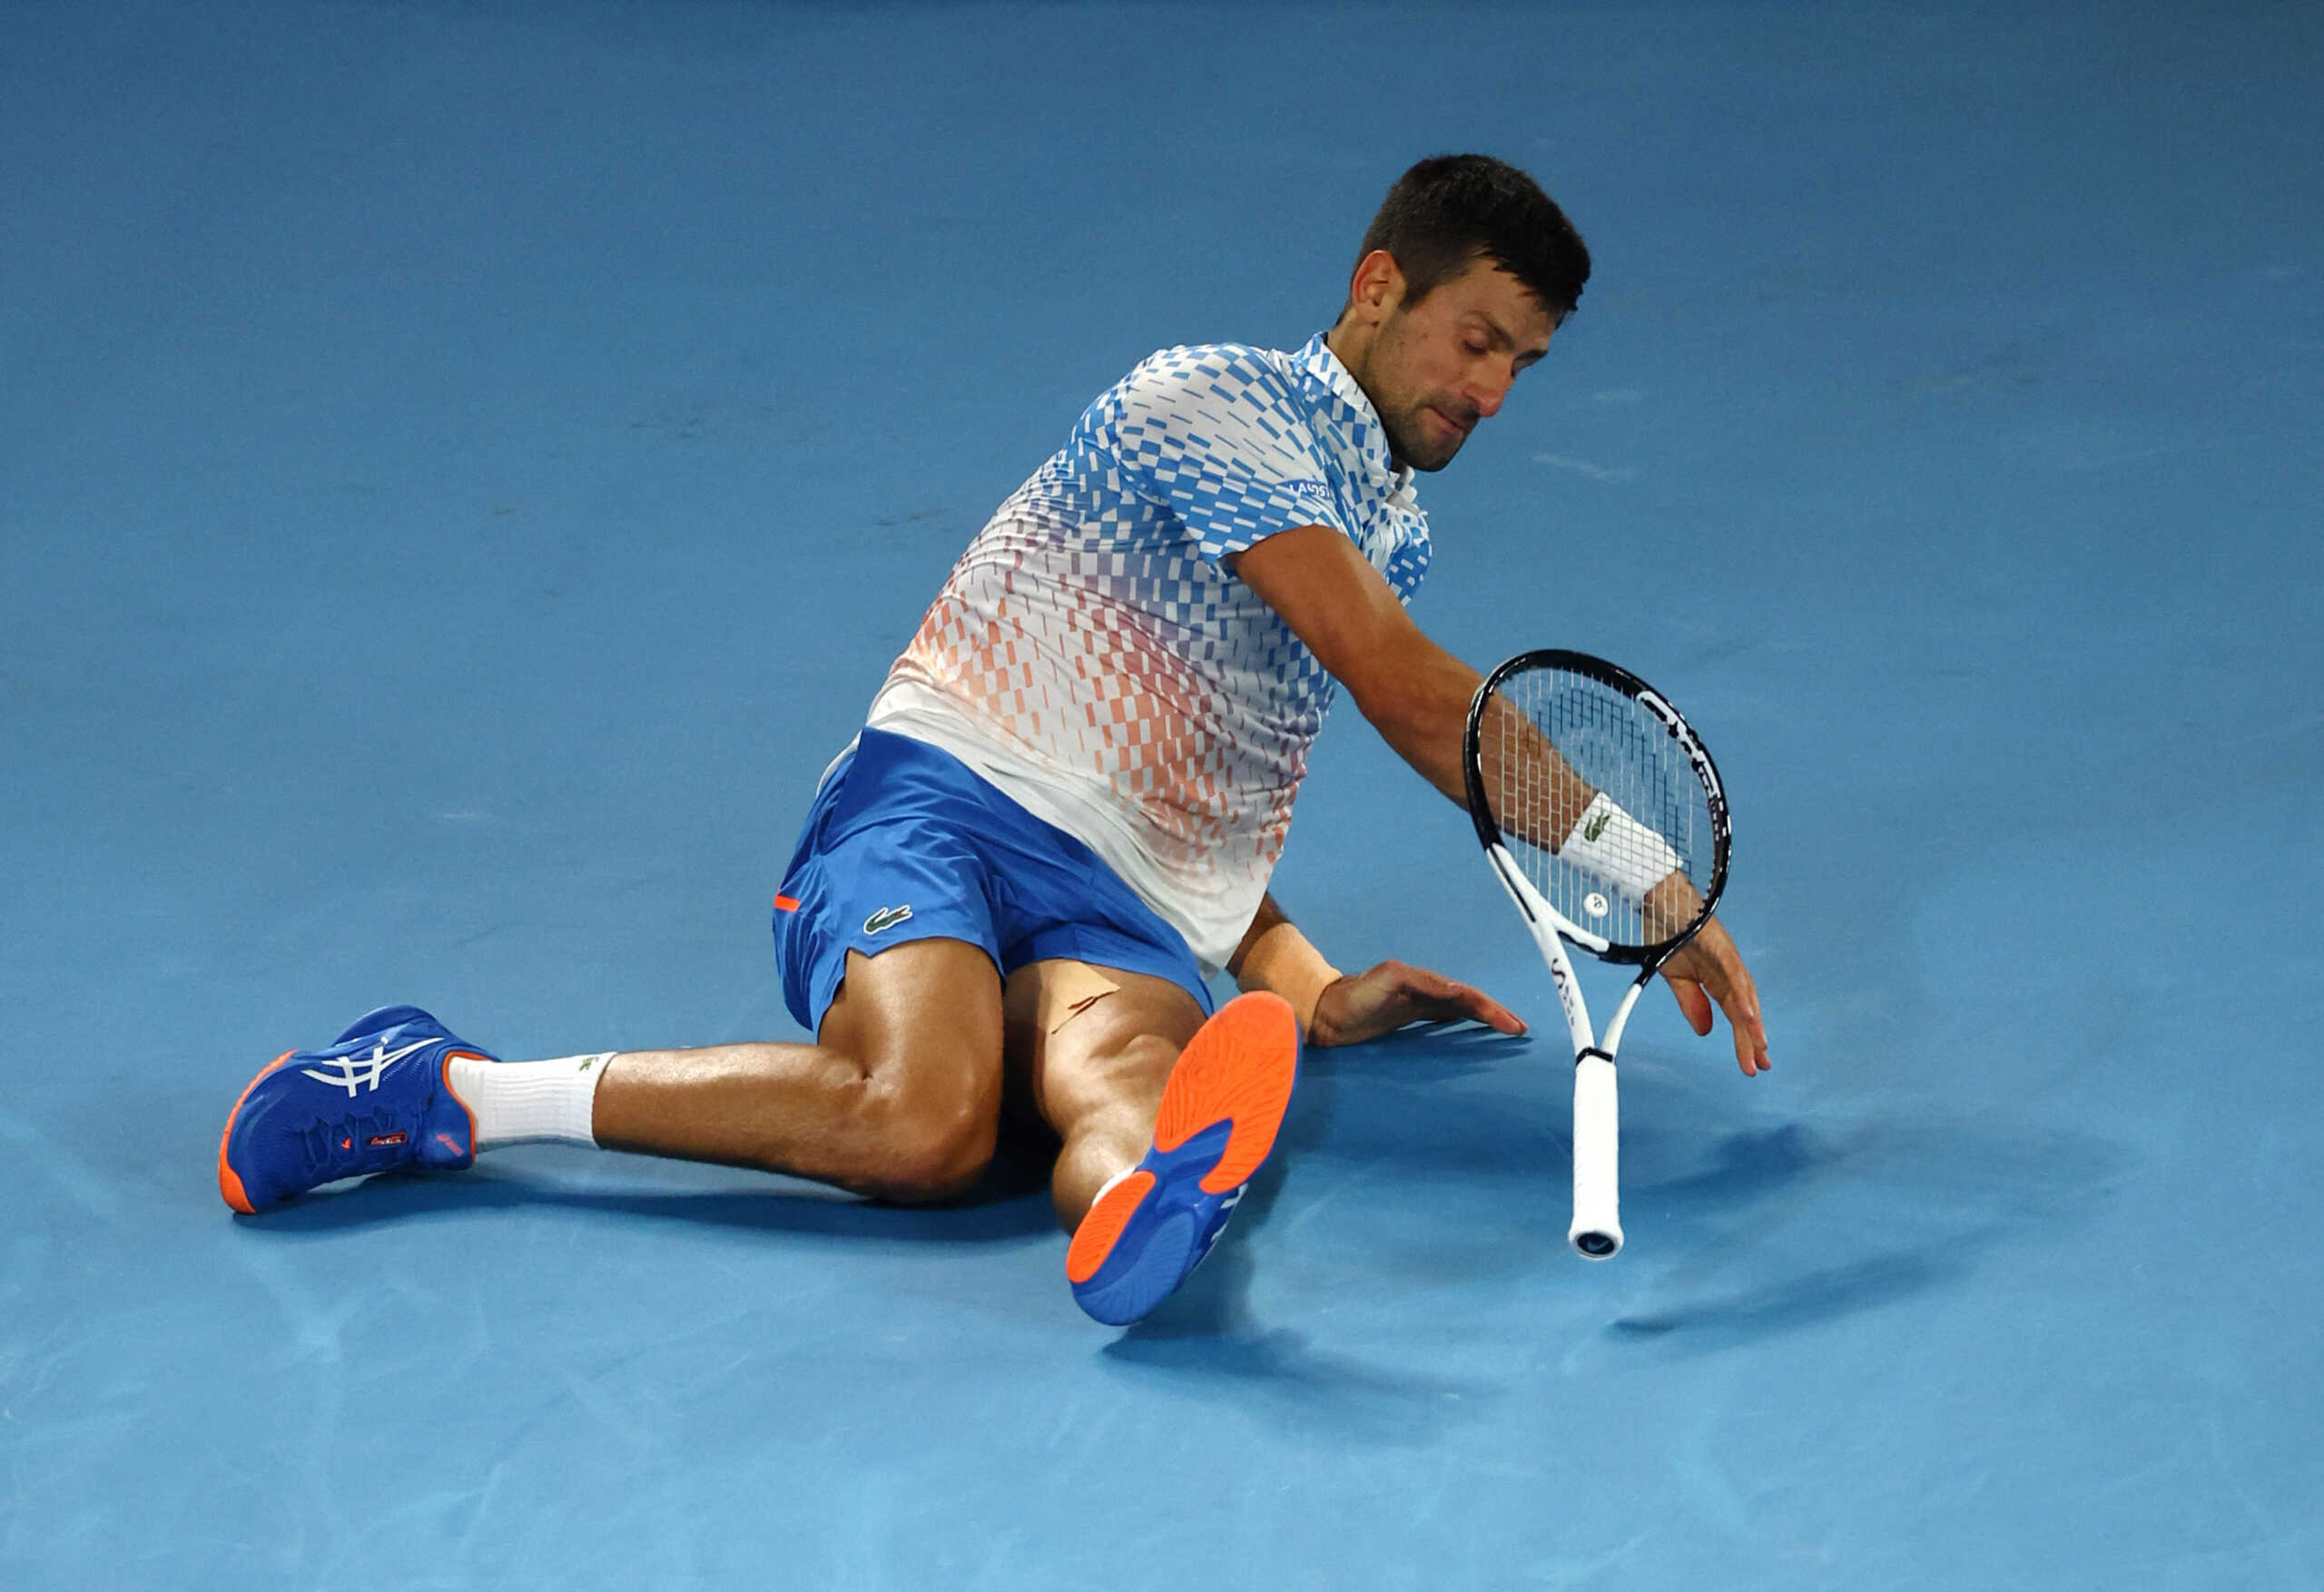 Αποκάλυψη για Νόβακ Τζόκοβιτς: «Κατέκτησε το Australian Open με διάταση 3 εκατοστών στο δικέφαλο»